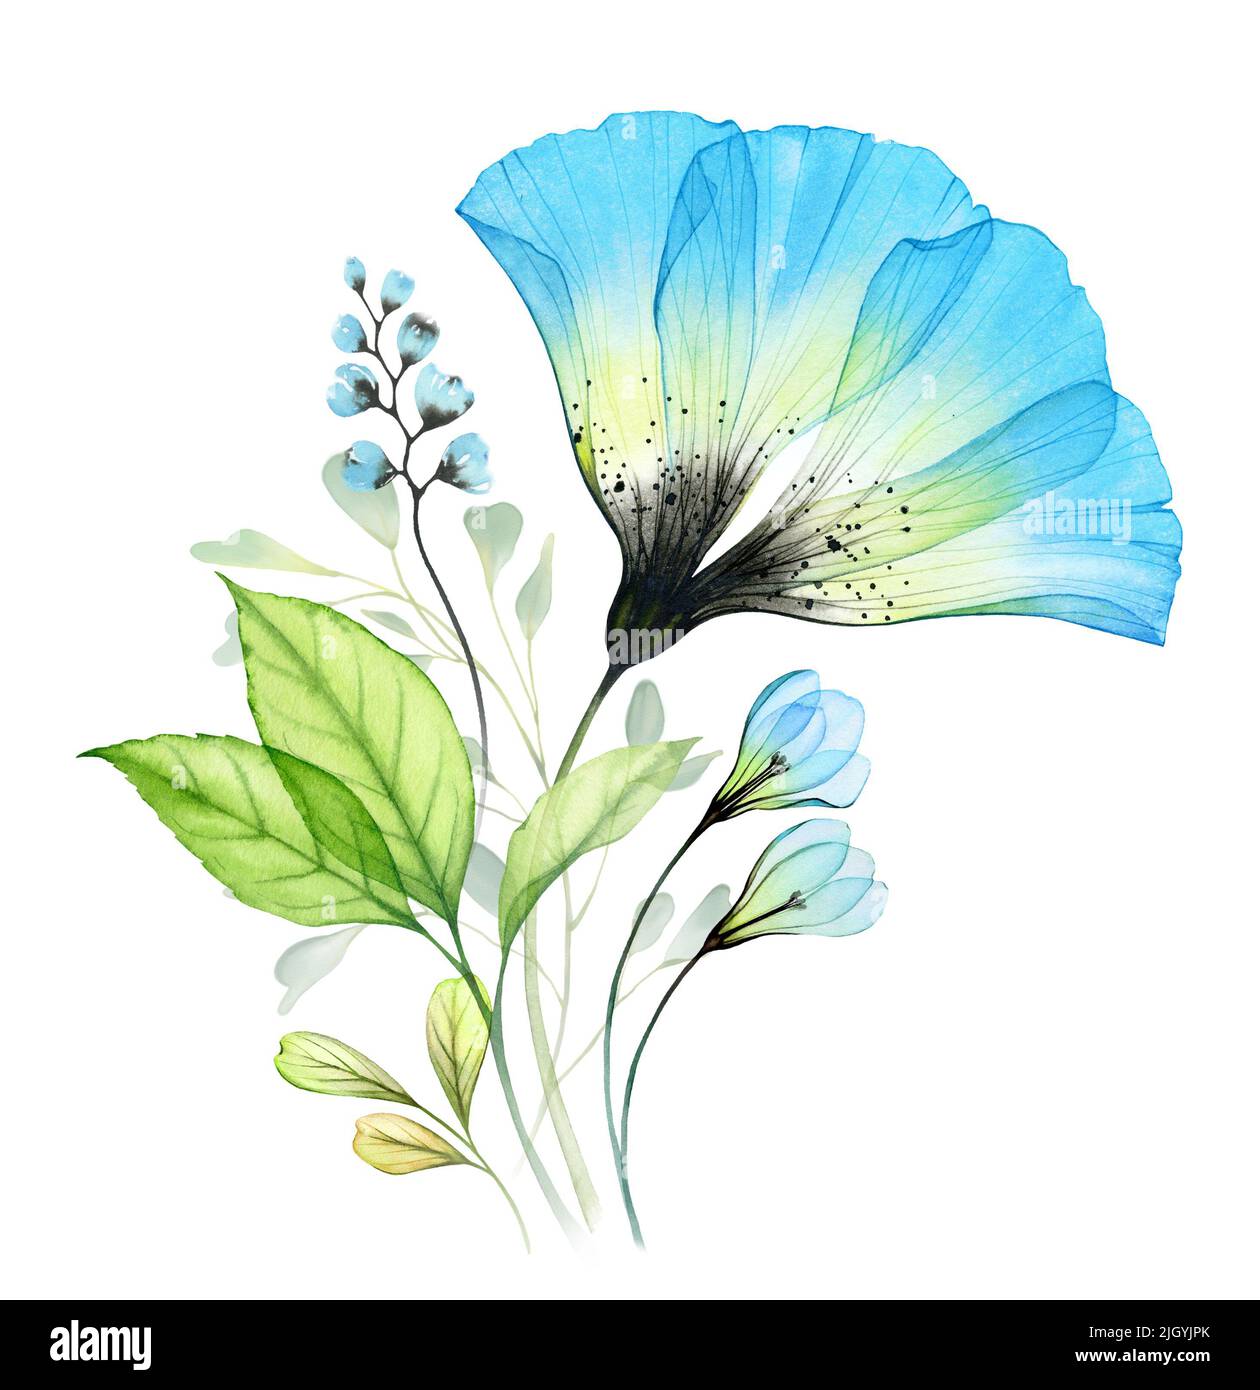 Aquarell-Bouquet mit großer blauer Anemone und Schneeglöckchen. Abstrakte Komposition mit türkisfarbenen transparenten Blüten und grünen Blättern. Handbemalt lebhaft Stockfoto